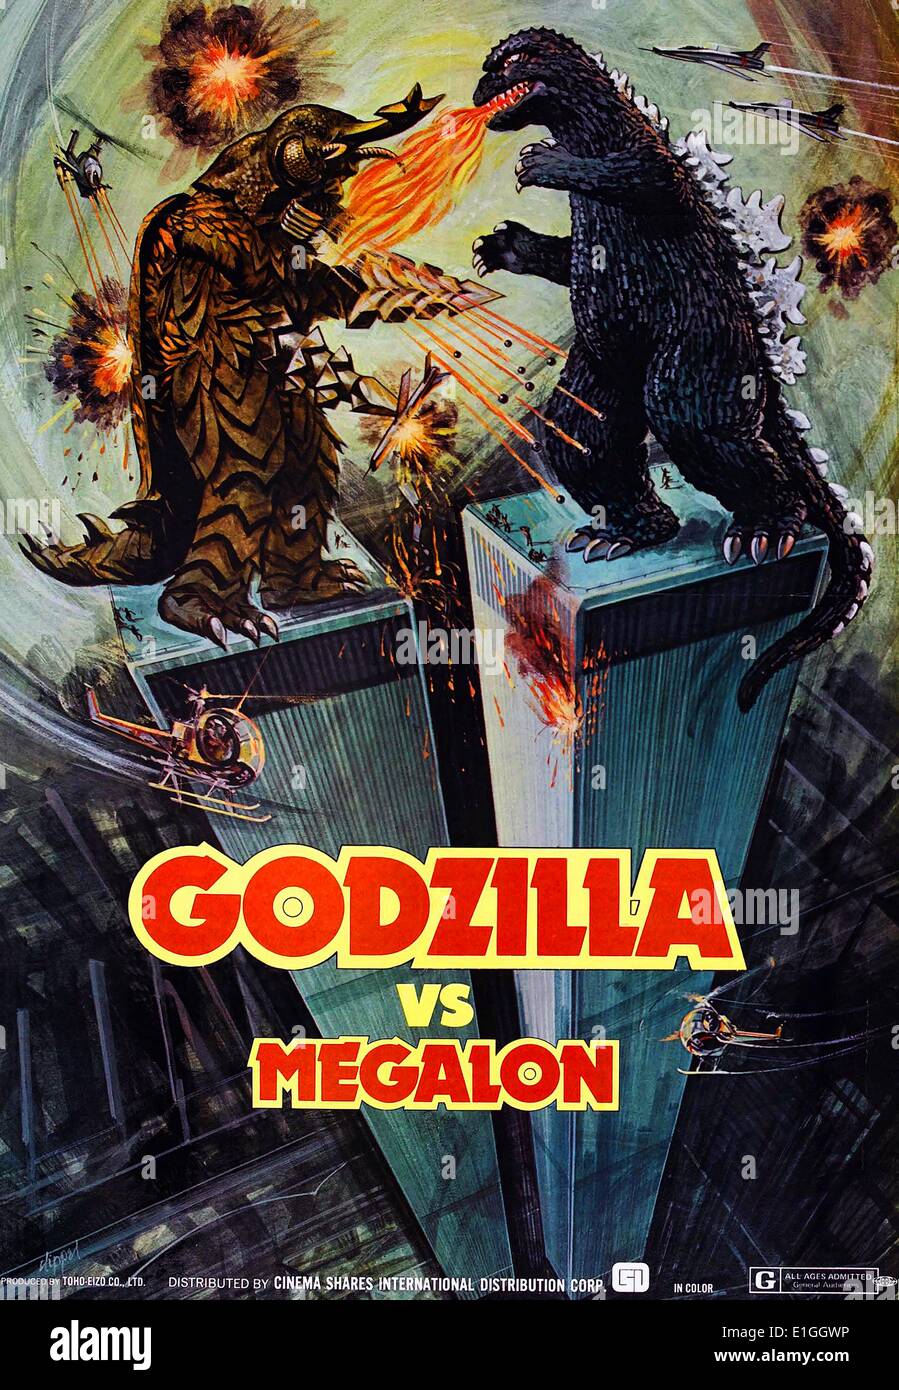 Godzilla vs Megalon a 1973 Japanese science fiction kaiju film. Stock Photo